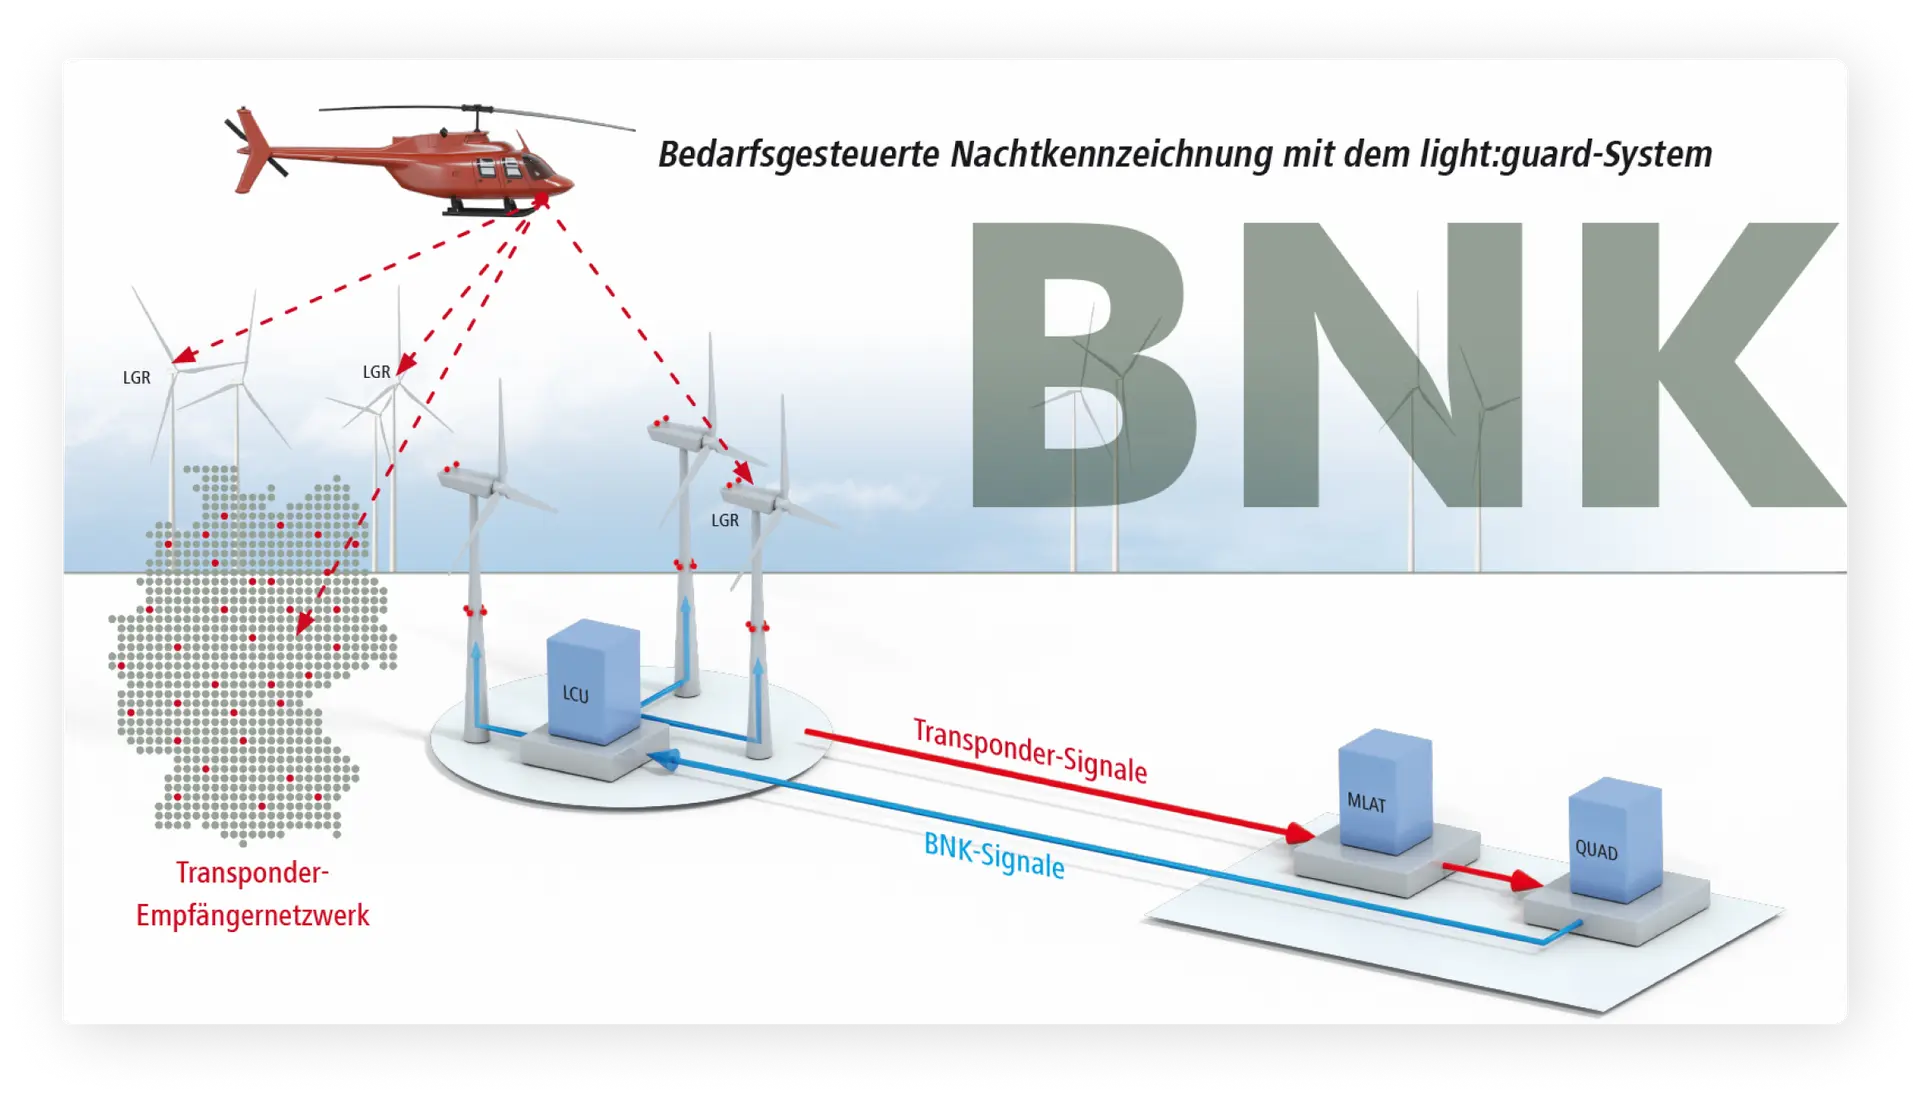 Überschrift: Bedarfsgesteuerte Nachtkennzeichnung (BNK) mit dem light:guard-System. Ein Hubschrauber sendet Transpondersignale an Empfänger (LGR) auf Windenergieanlagen/Windrädern aus, die diese Signale an das Rechenzentrum (MLAT und QUAD) weiterleiten, wo sie dann den Standort des Hubschraubers mittels Multilateration berechnen und BNK-Signale zur Aufhebung der Unterdrückung des Lichts an den Windpark weiterleiten, wenn der Hubschrauber in der Nähe des Windparks ist.